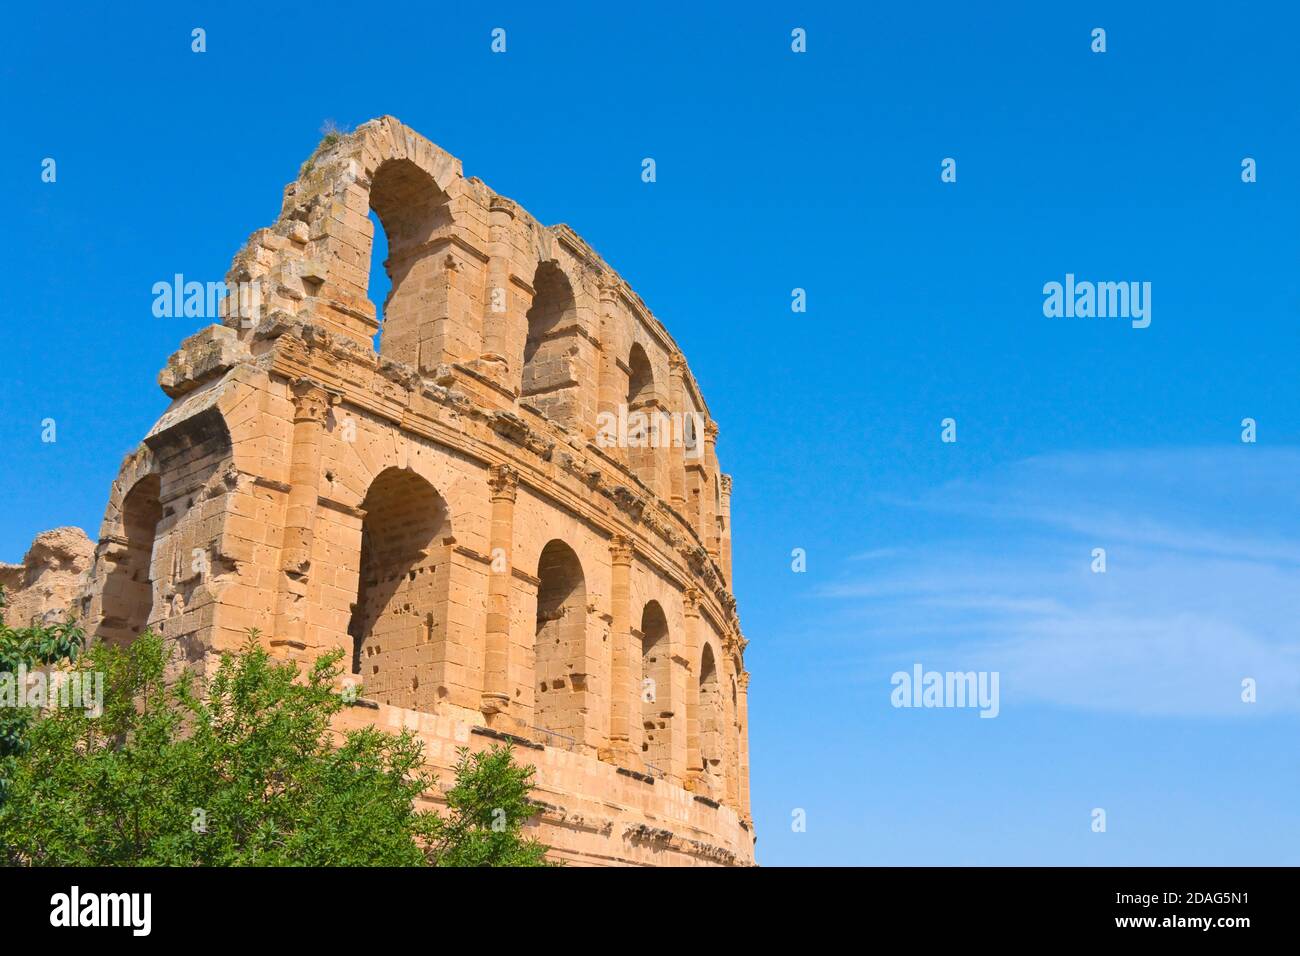 L'amphithéâtre romain, le troisième plus grand au monde, UNESCO World Heritage site, El Jem, Tunisie Banque D'Images